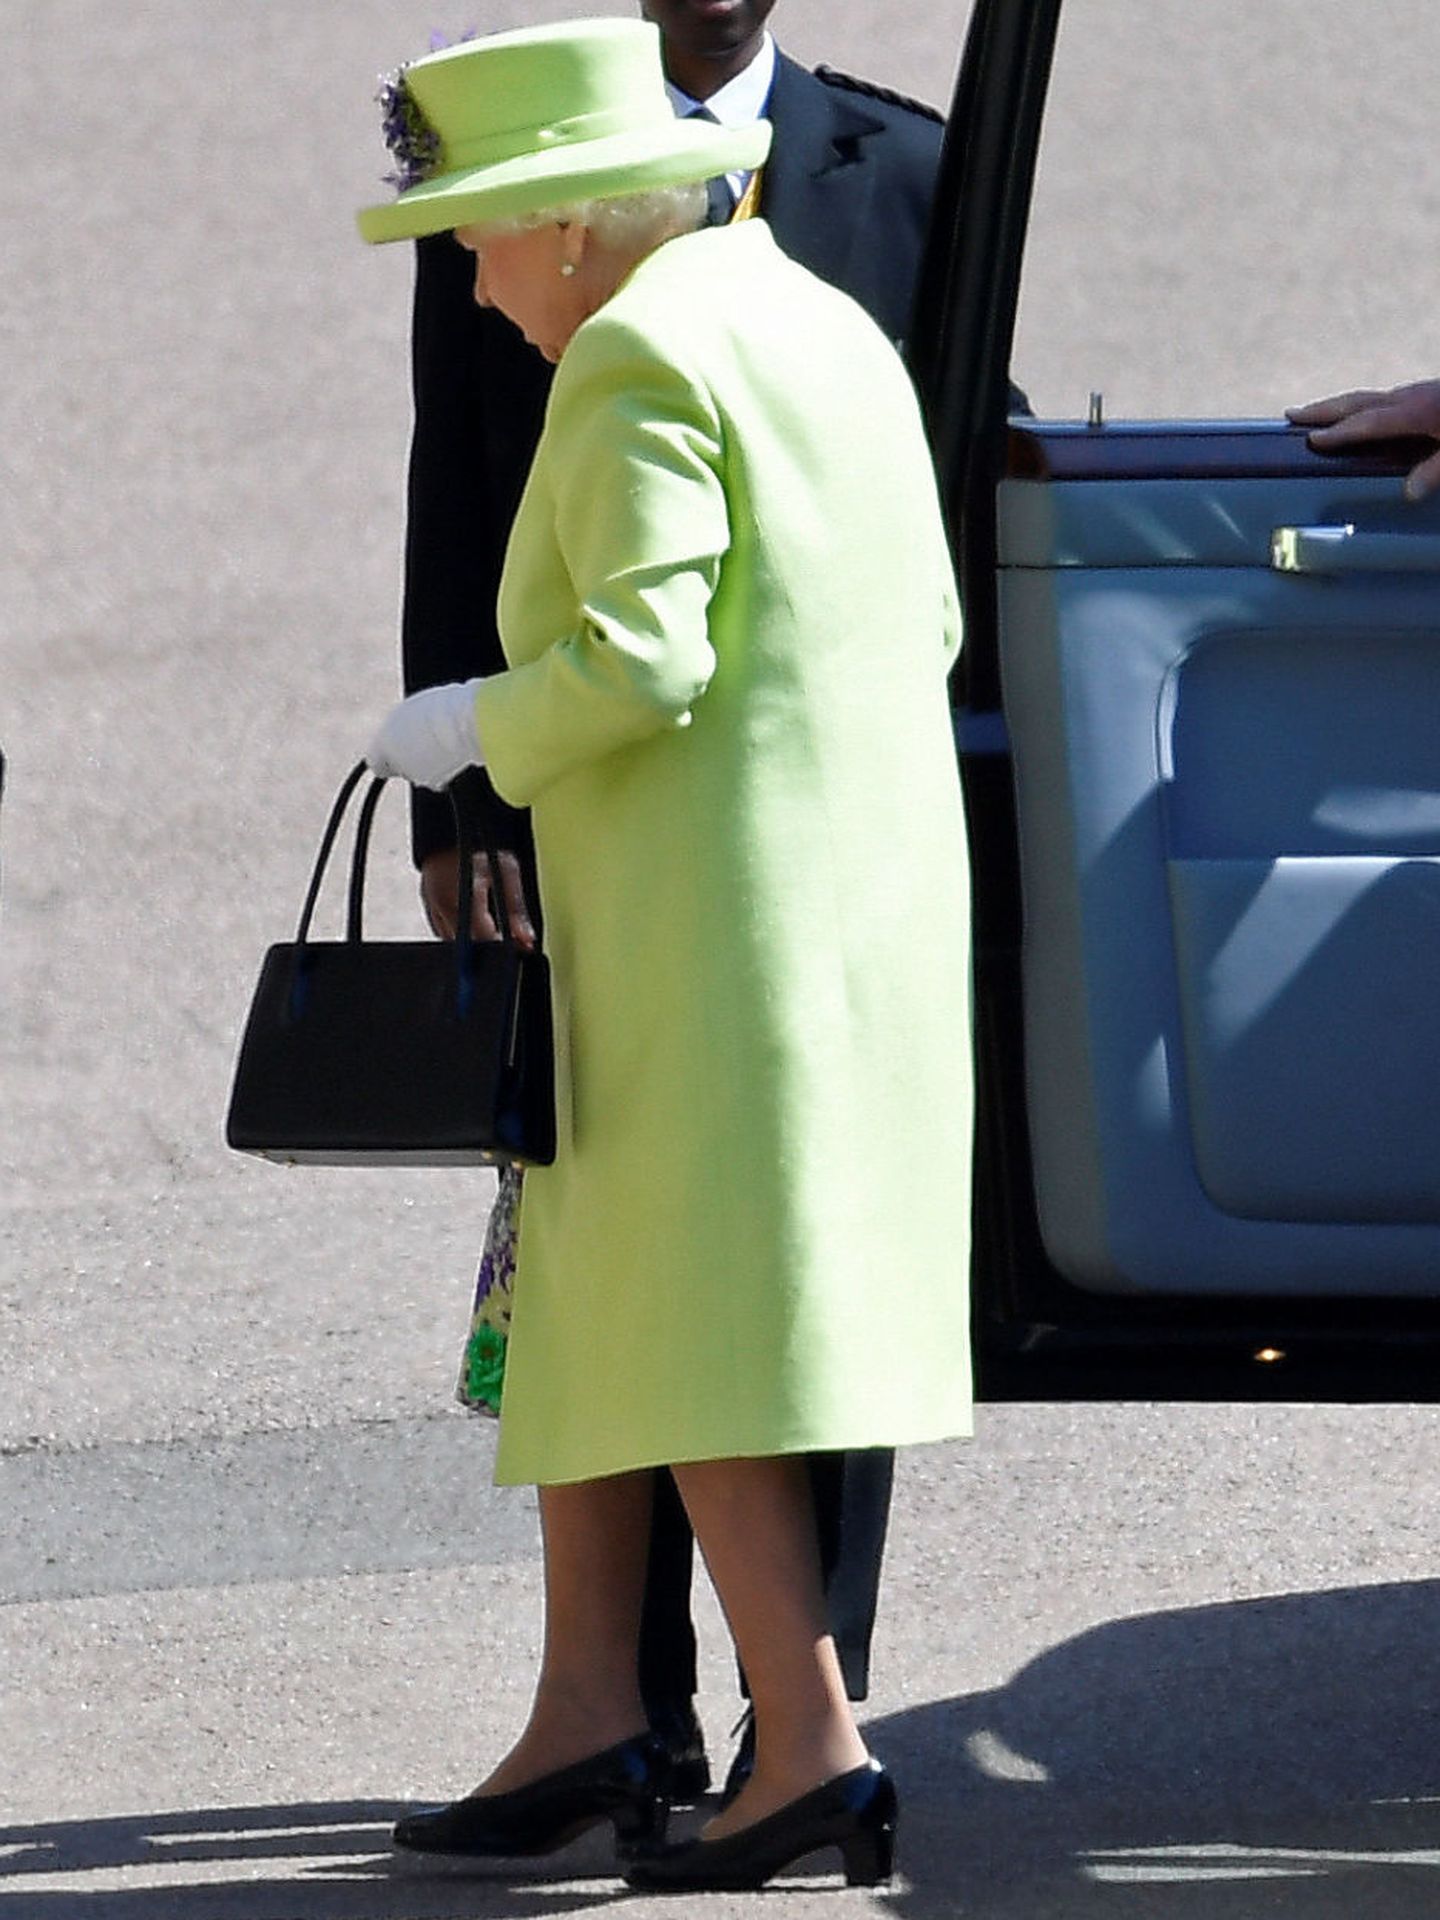 La reina. (Reuters)